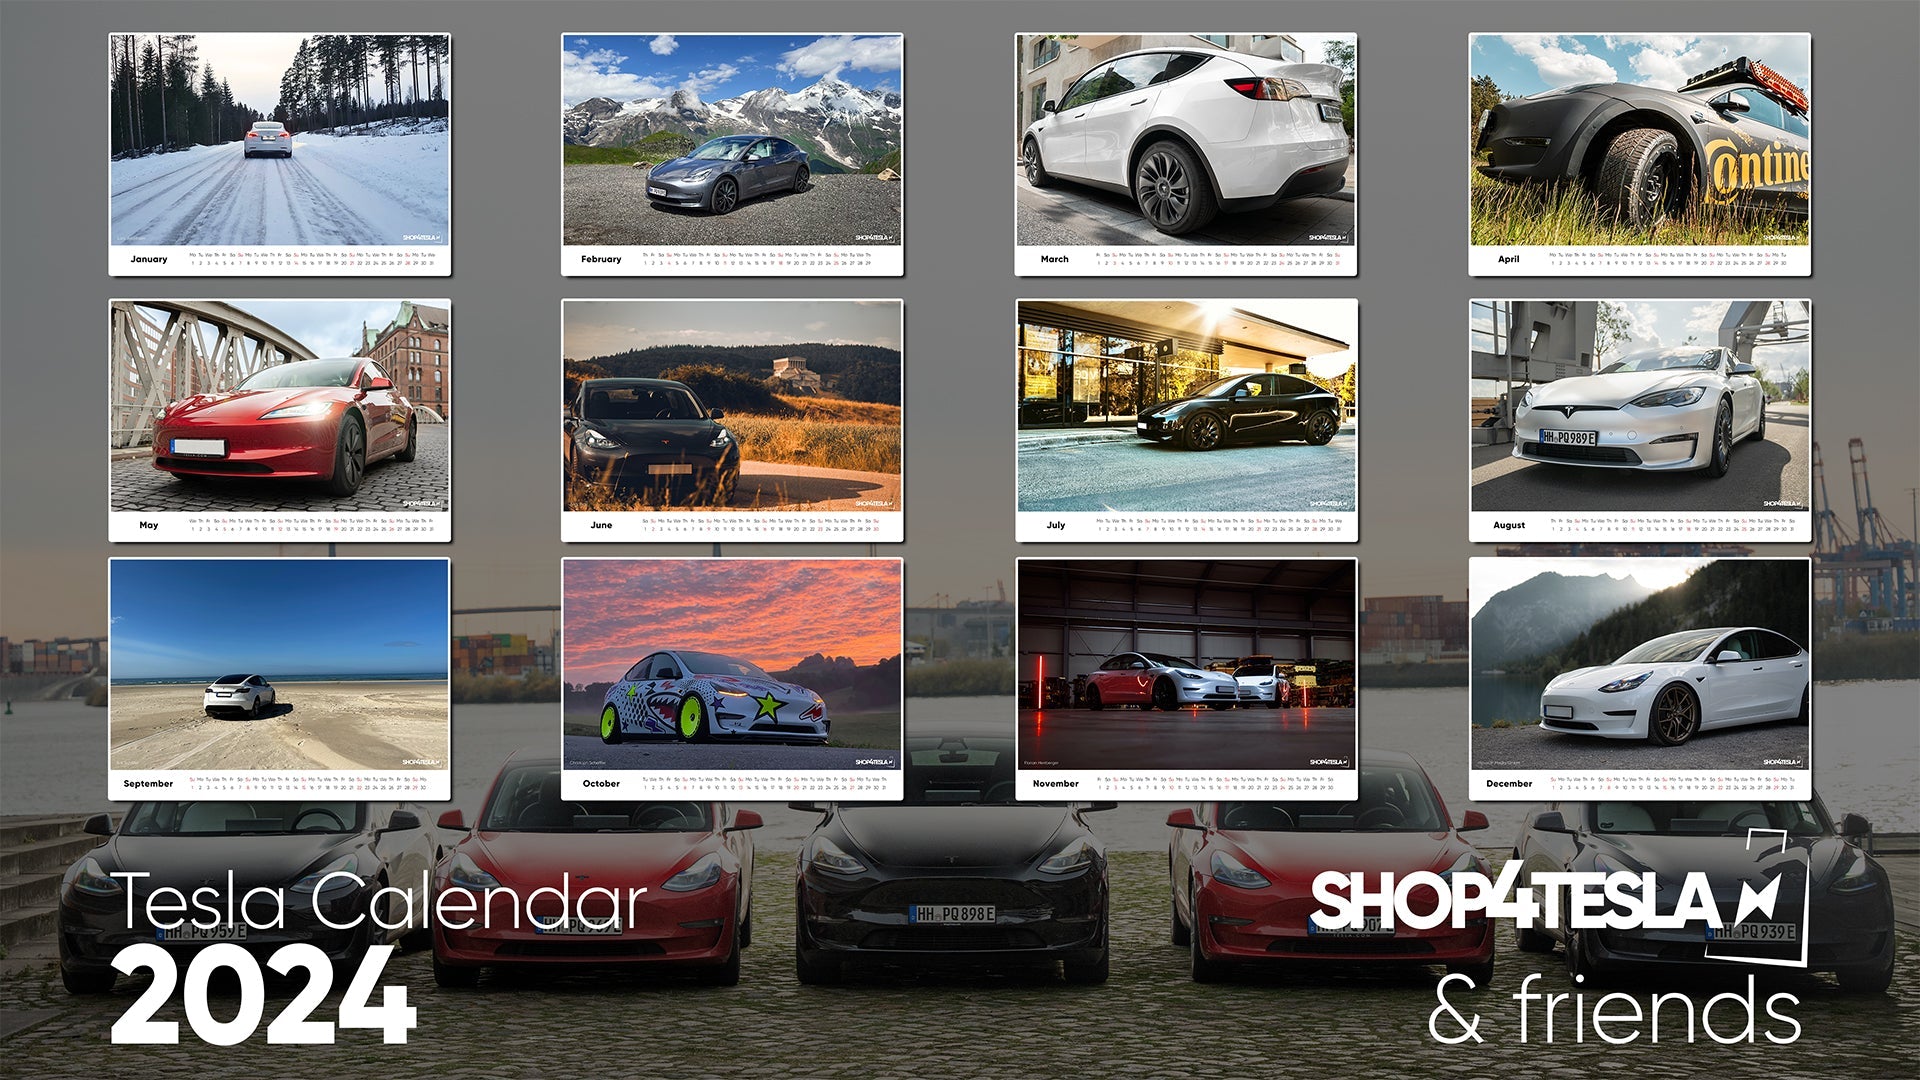 Tesla Calendar 2024 by Shop4tesla & Friends